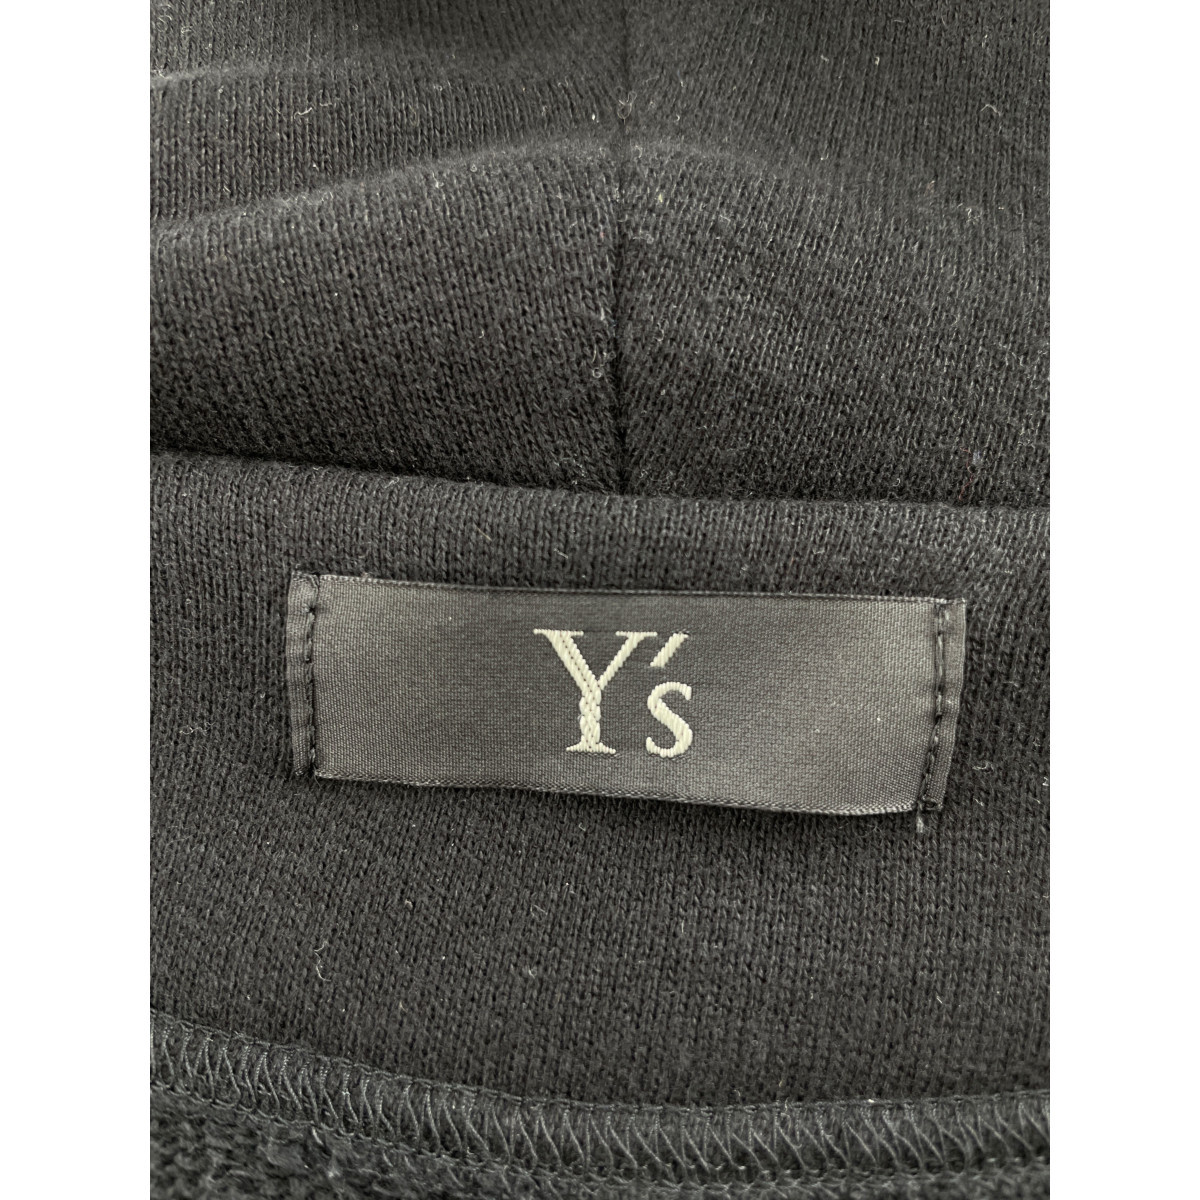 Y's ワイズ YK-T03-960 ブラック エンブロイダリー ジップアップロングフーディ ブラック 2 ジャケット コットン レディース 中古_画像5